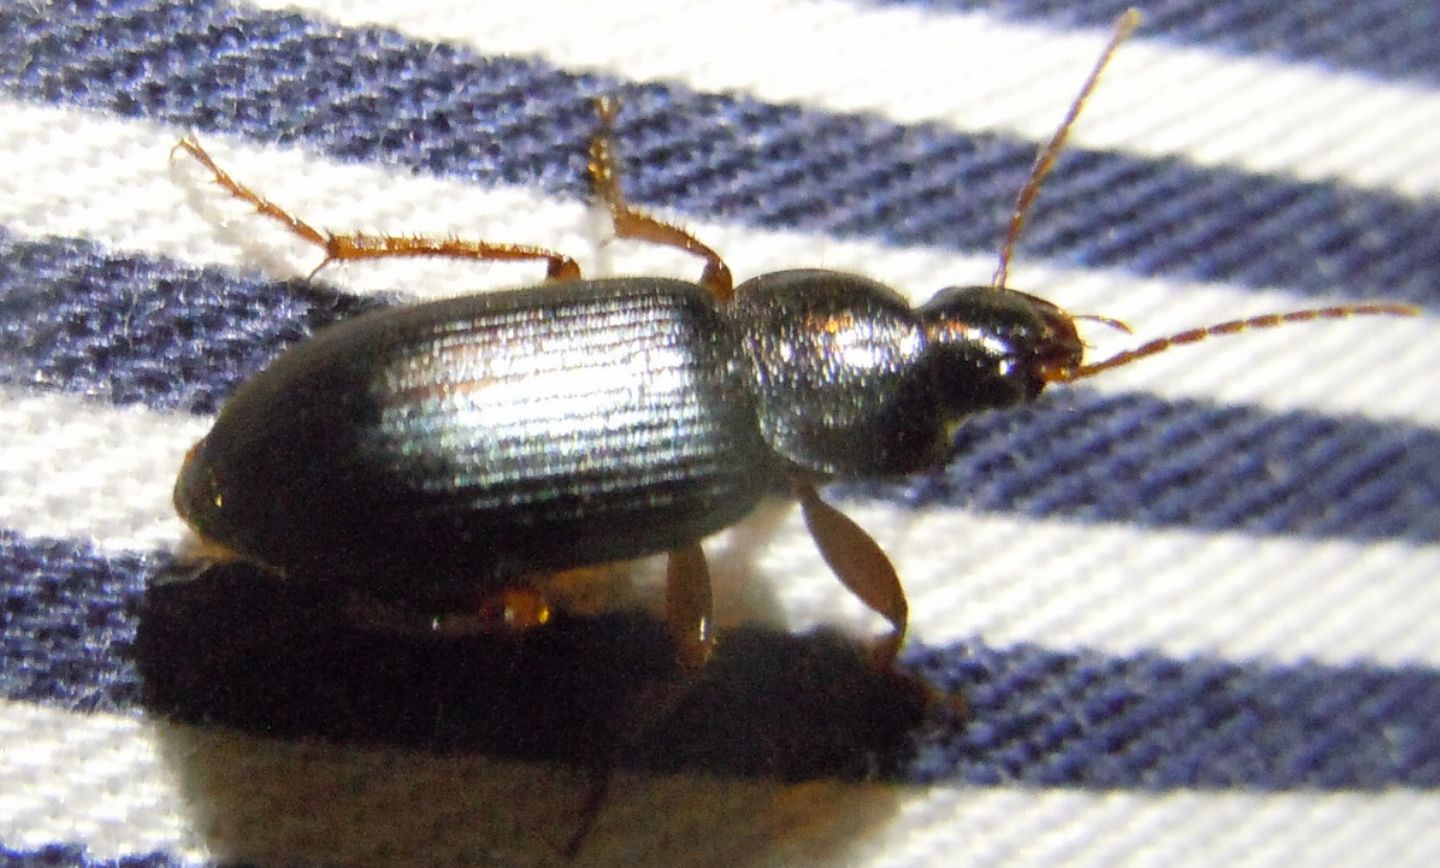 Ophonus ardosiacus  e Pseudoophonus rufipes  (Carabidae)